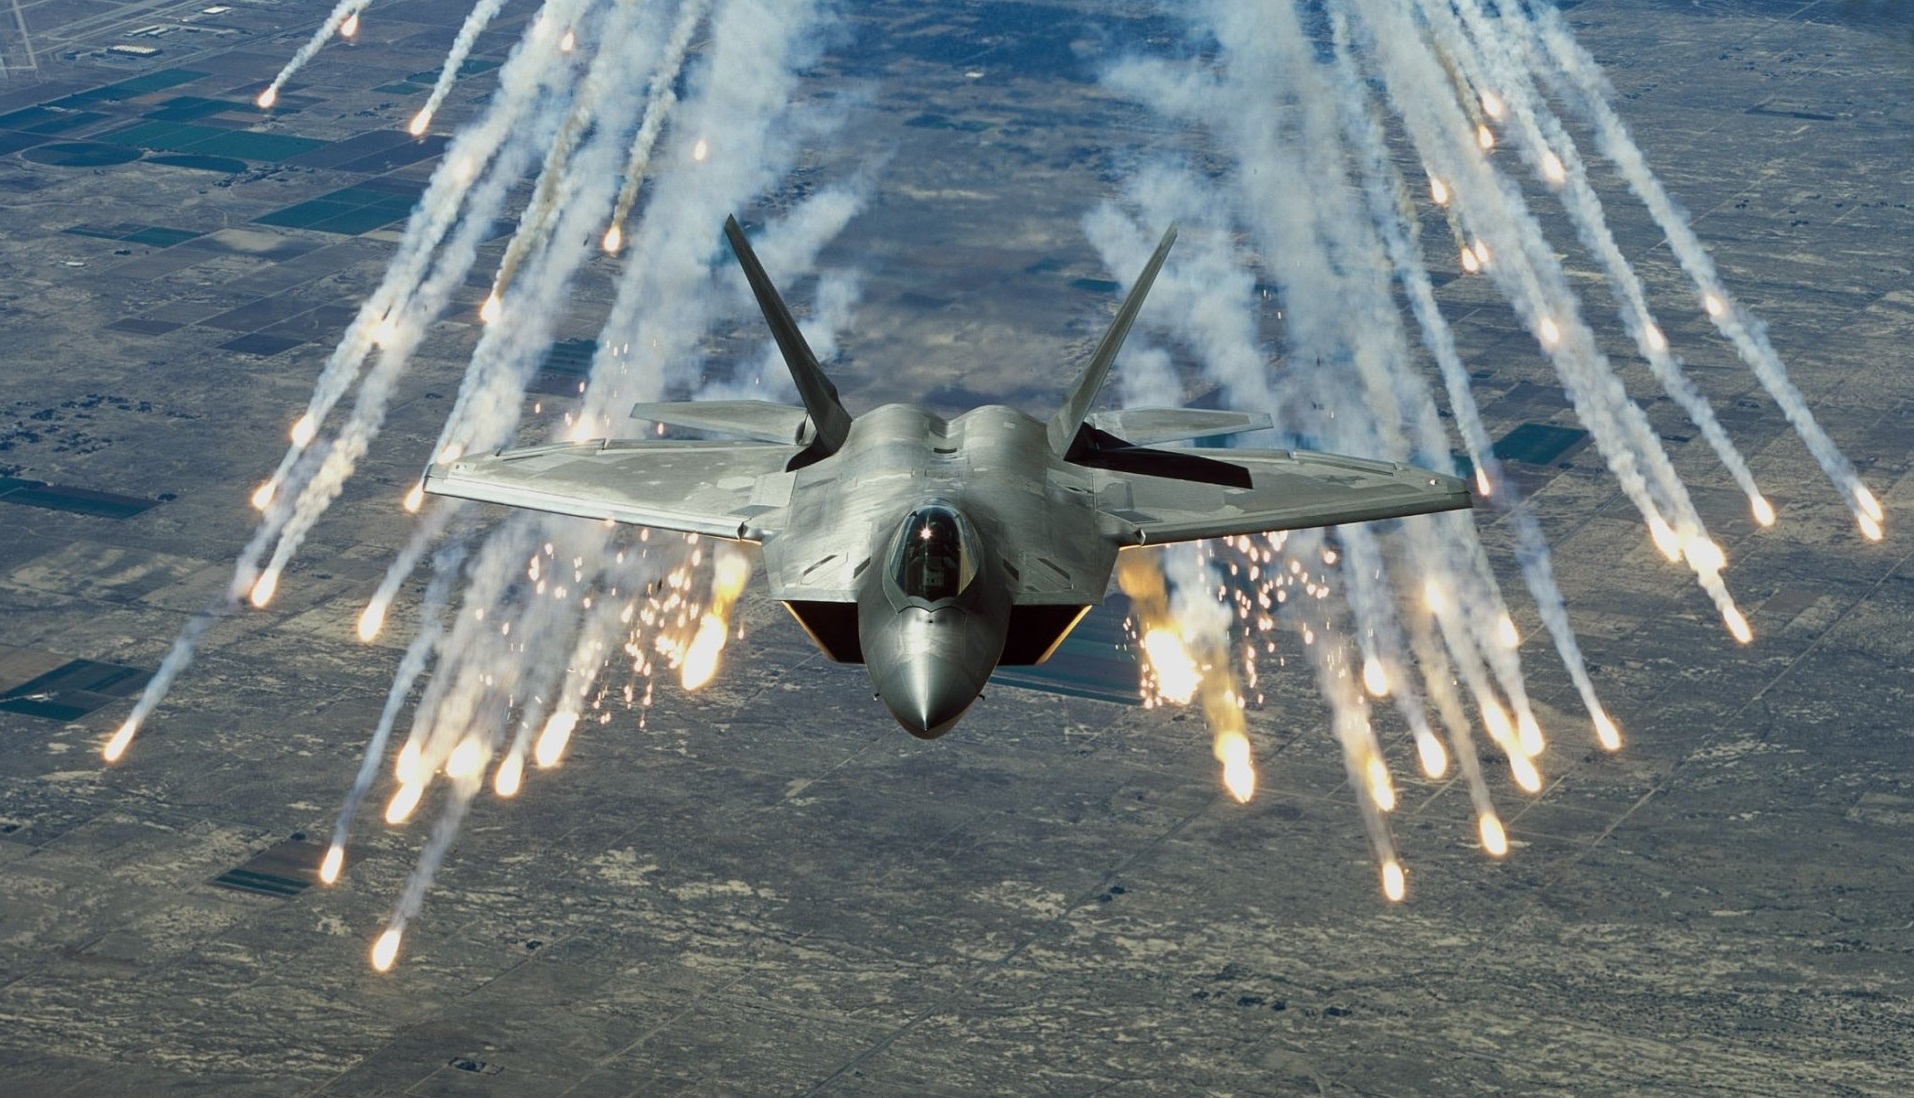 Kongres USA nie pozwolił Pentagonowi na wycofanie na emeryturę 33 najstarszych myśliwców piątej generacji F-22 Raptor